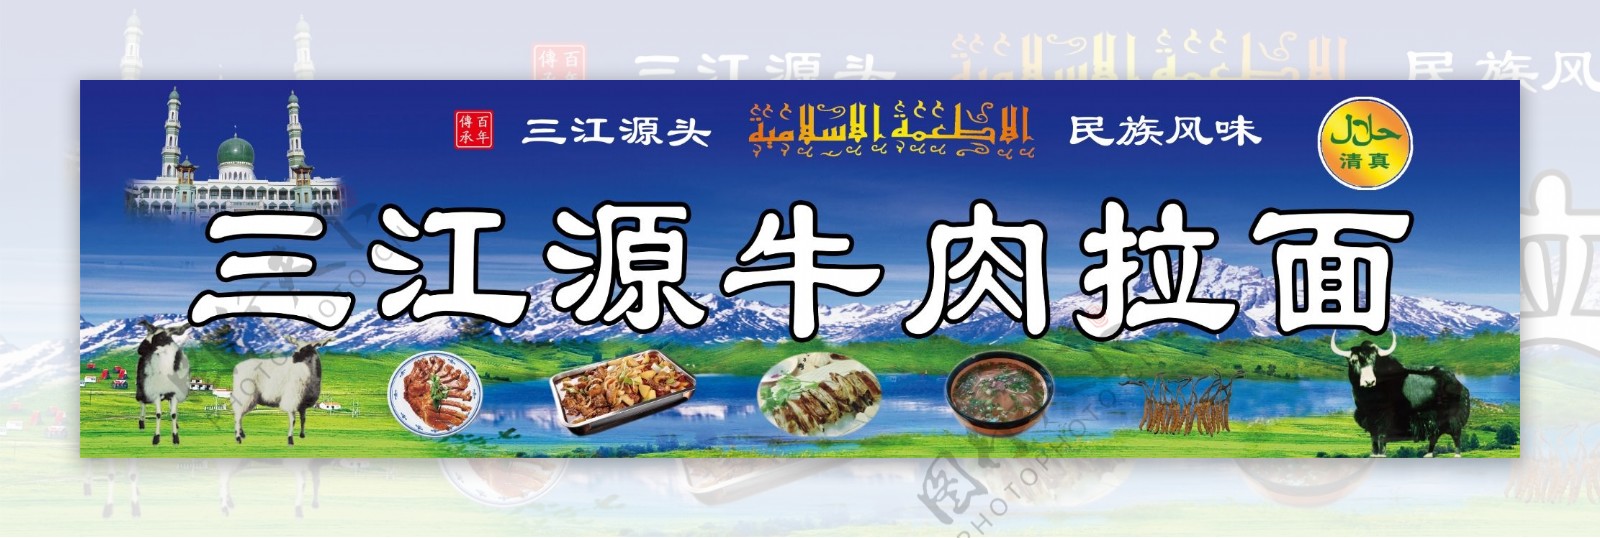 三江源牛肉拉面图片